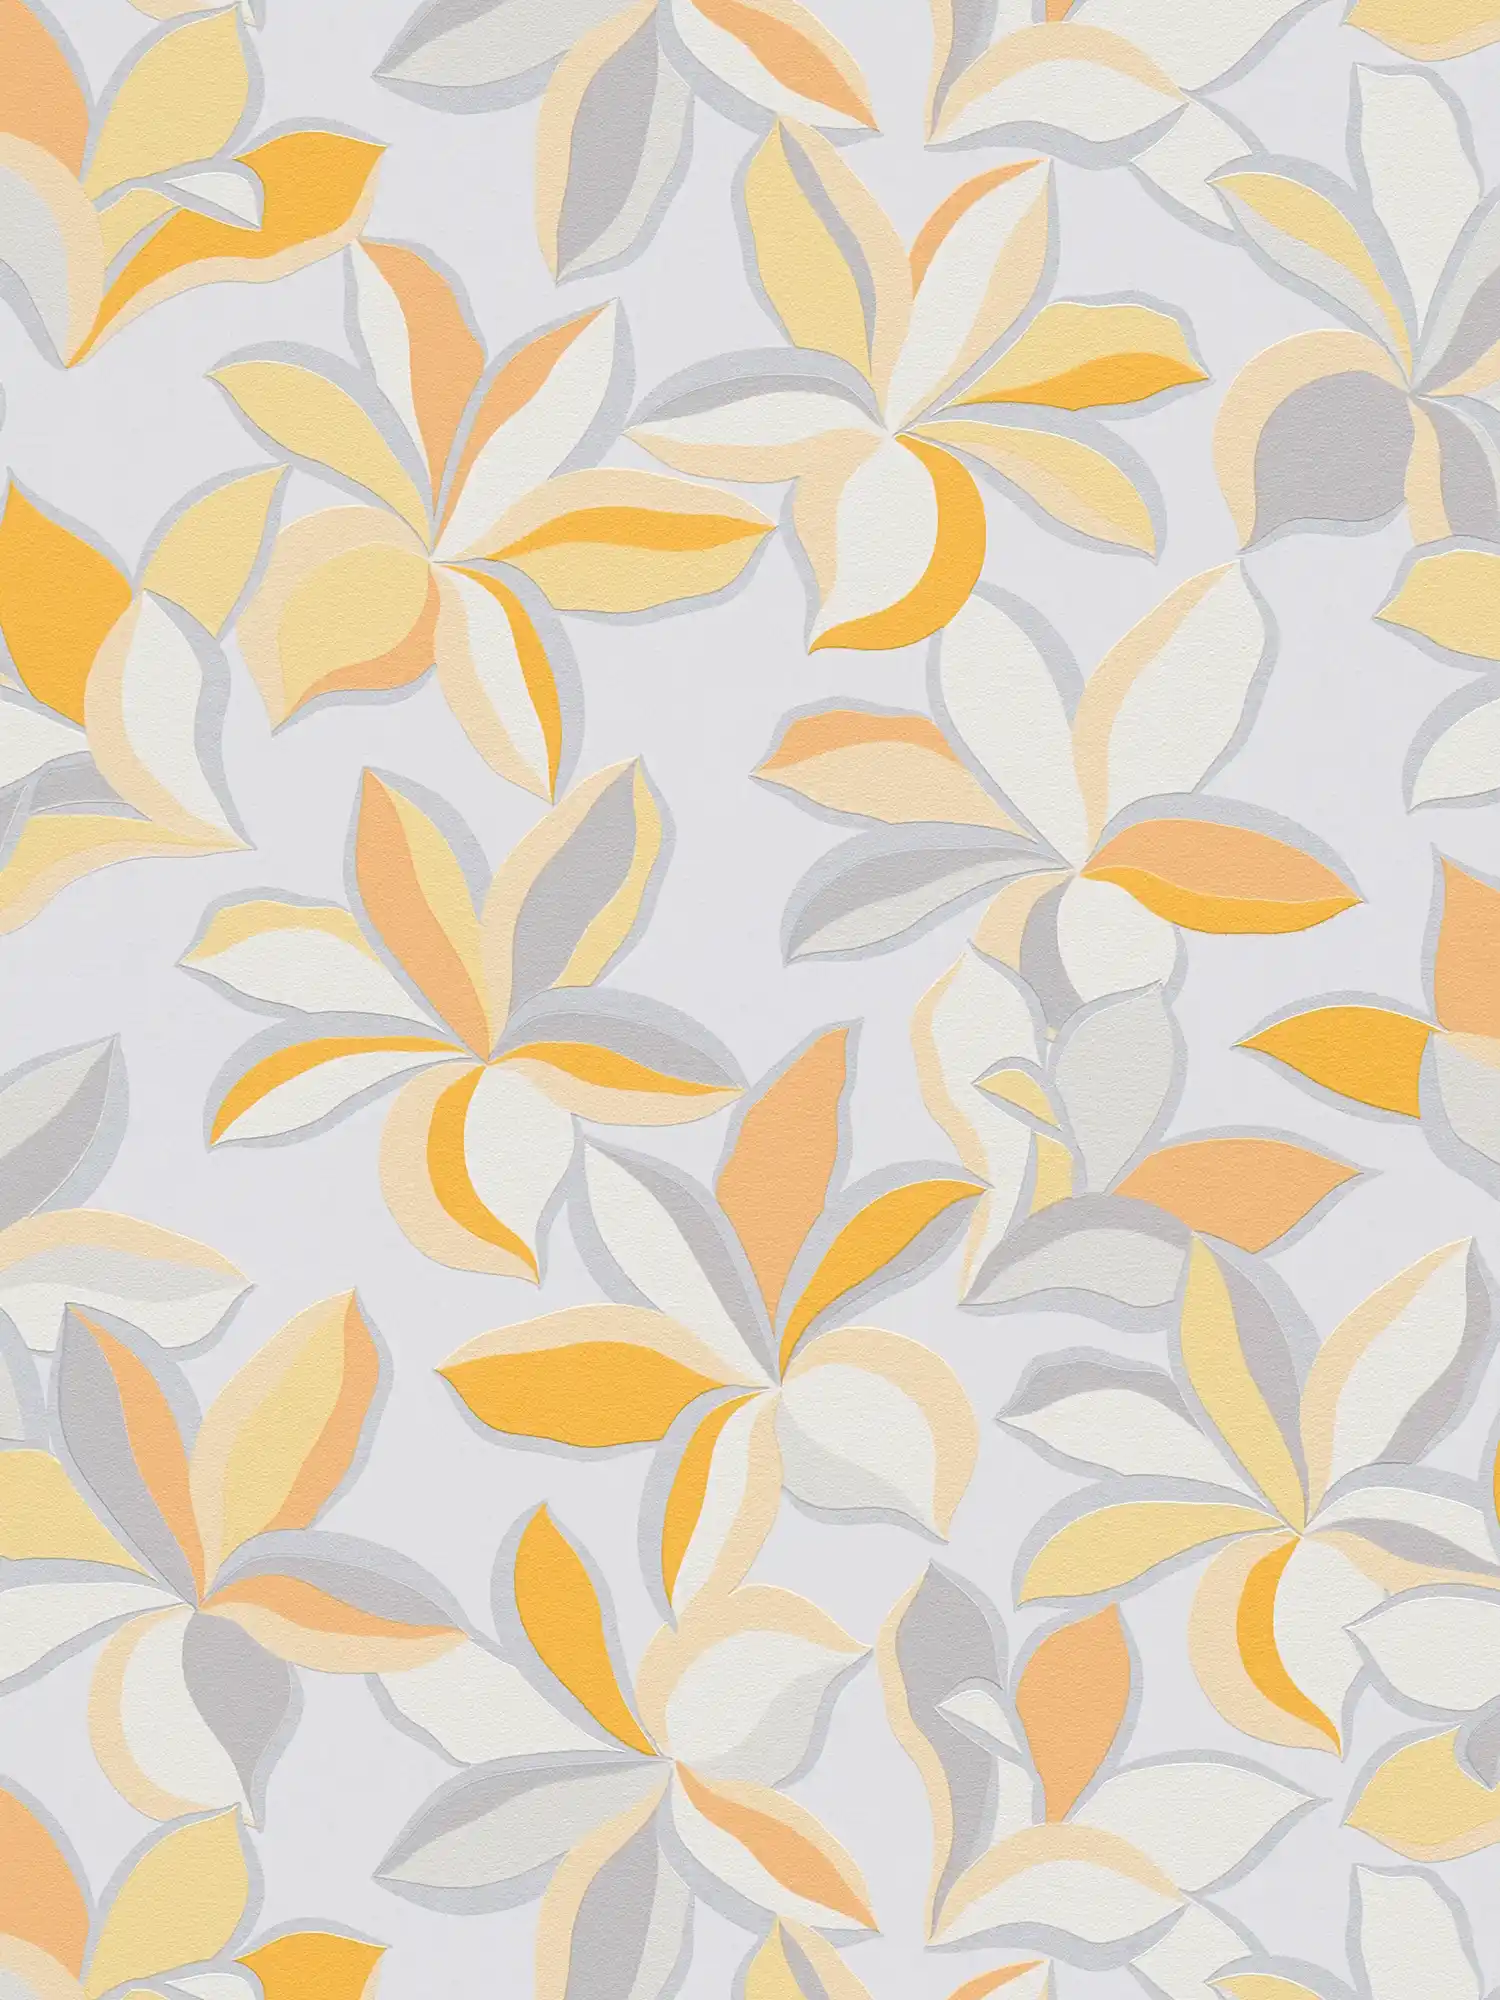 Carta da parati in tessuto non tessuto con motivo floreale e aspetto metallico - giallo, arancione, grigio
